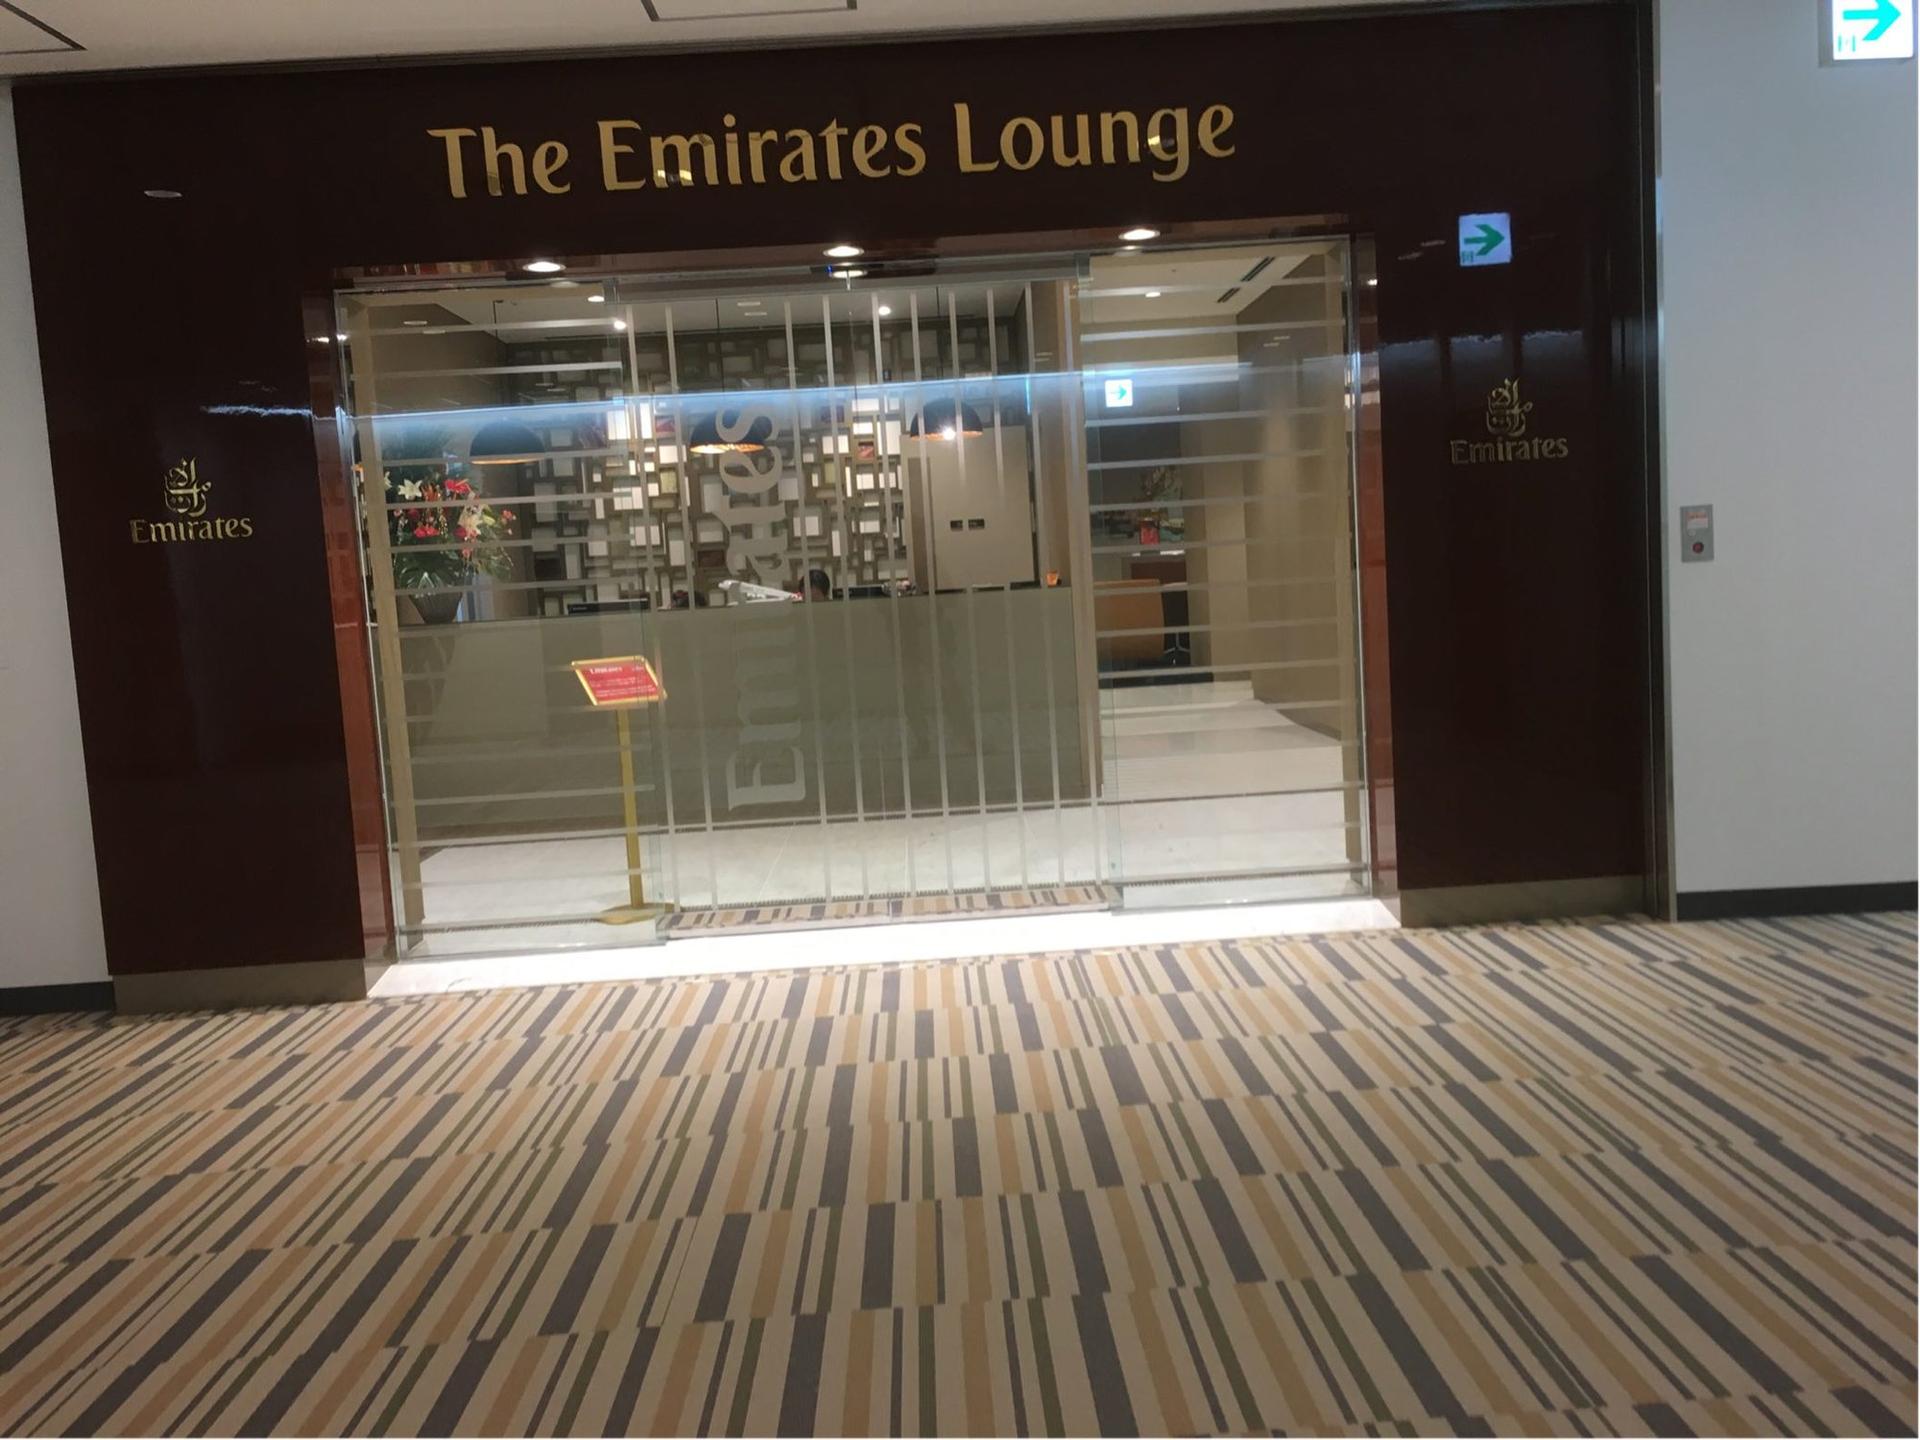 The Emirates Lounge image 5 of 9